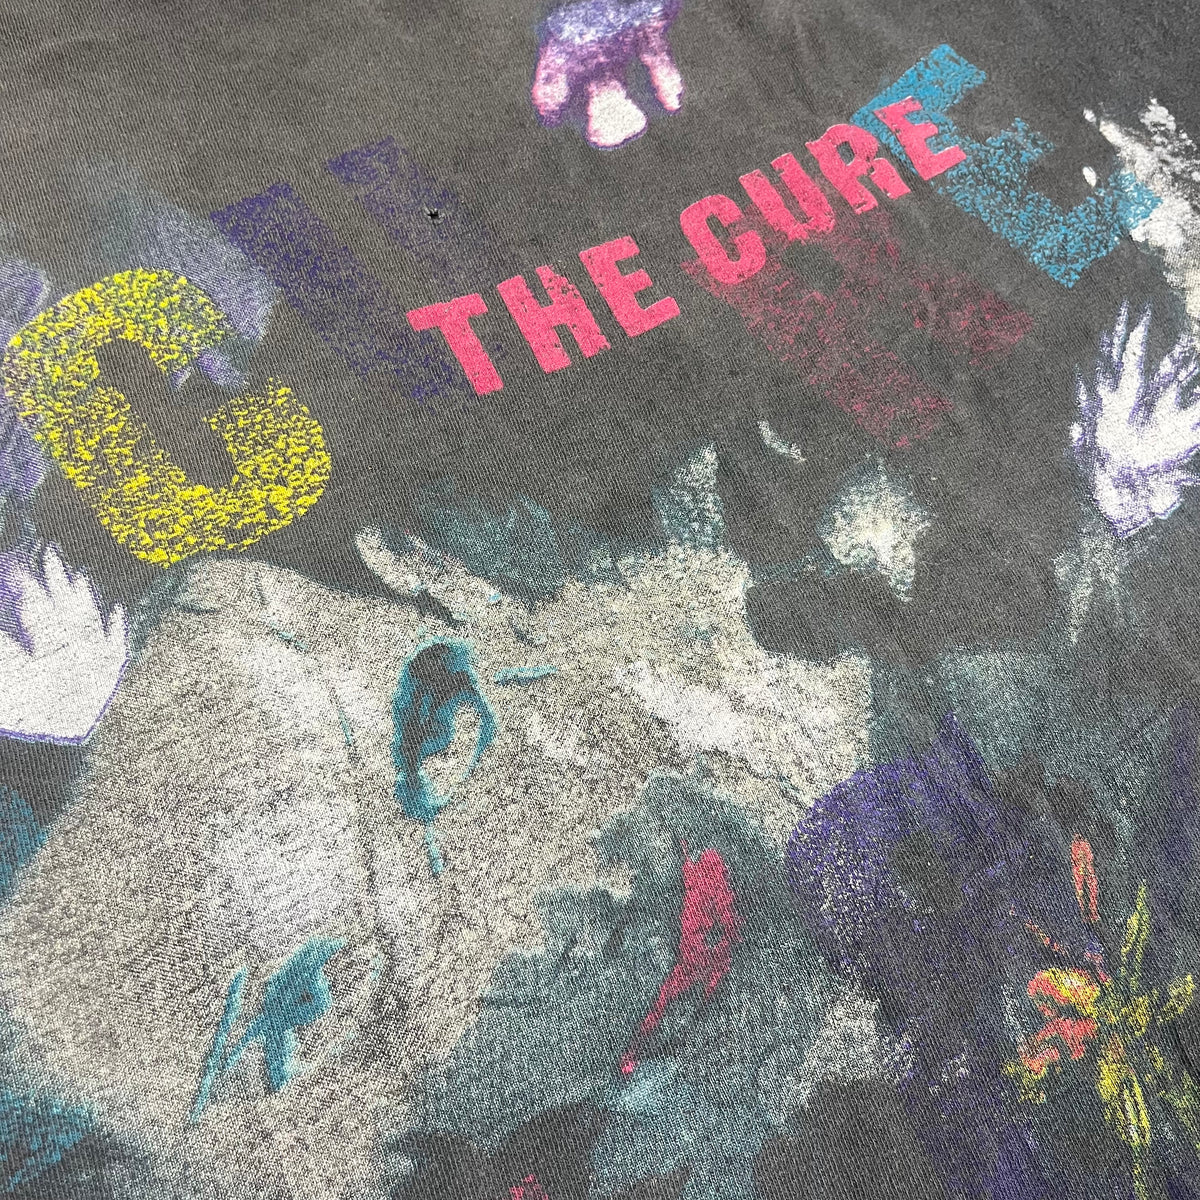 Vintage The Cure &quot;The Prayer&quot; &#39;89 Tour T-Shirt